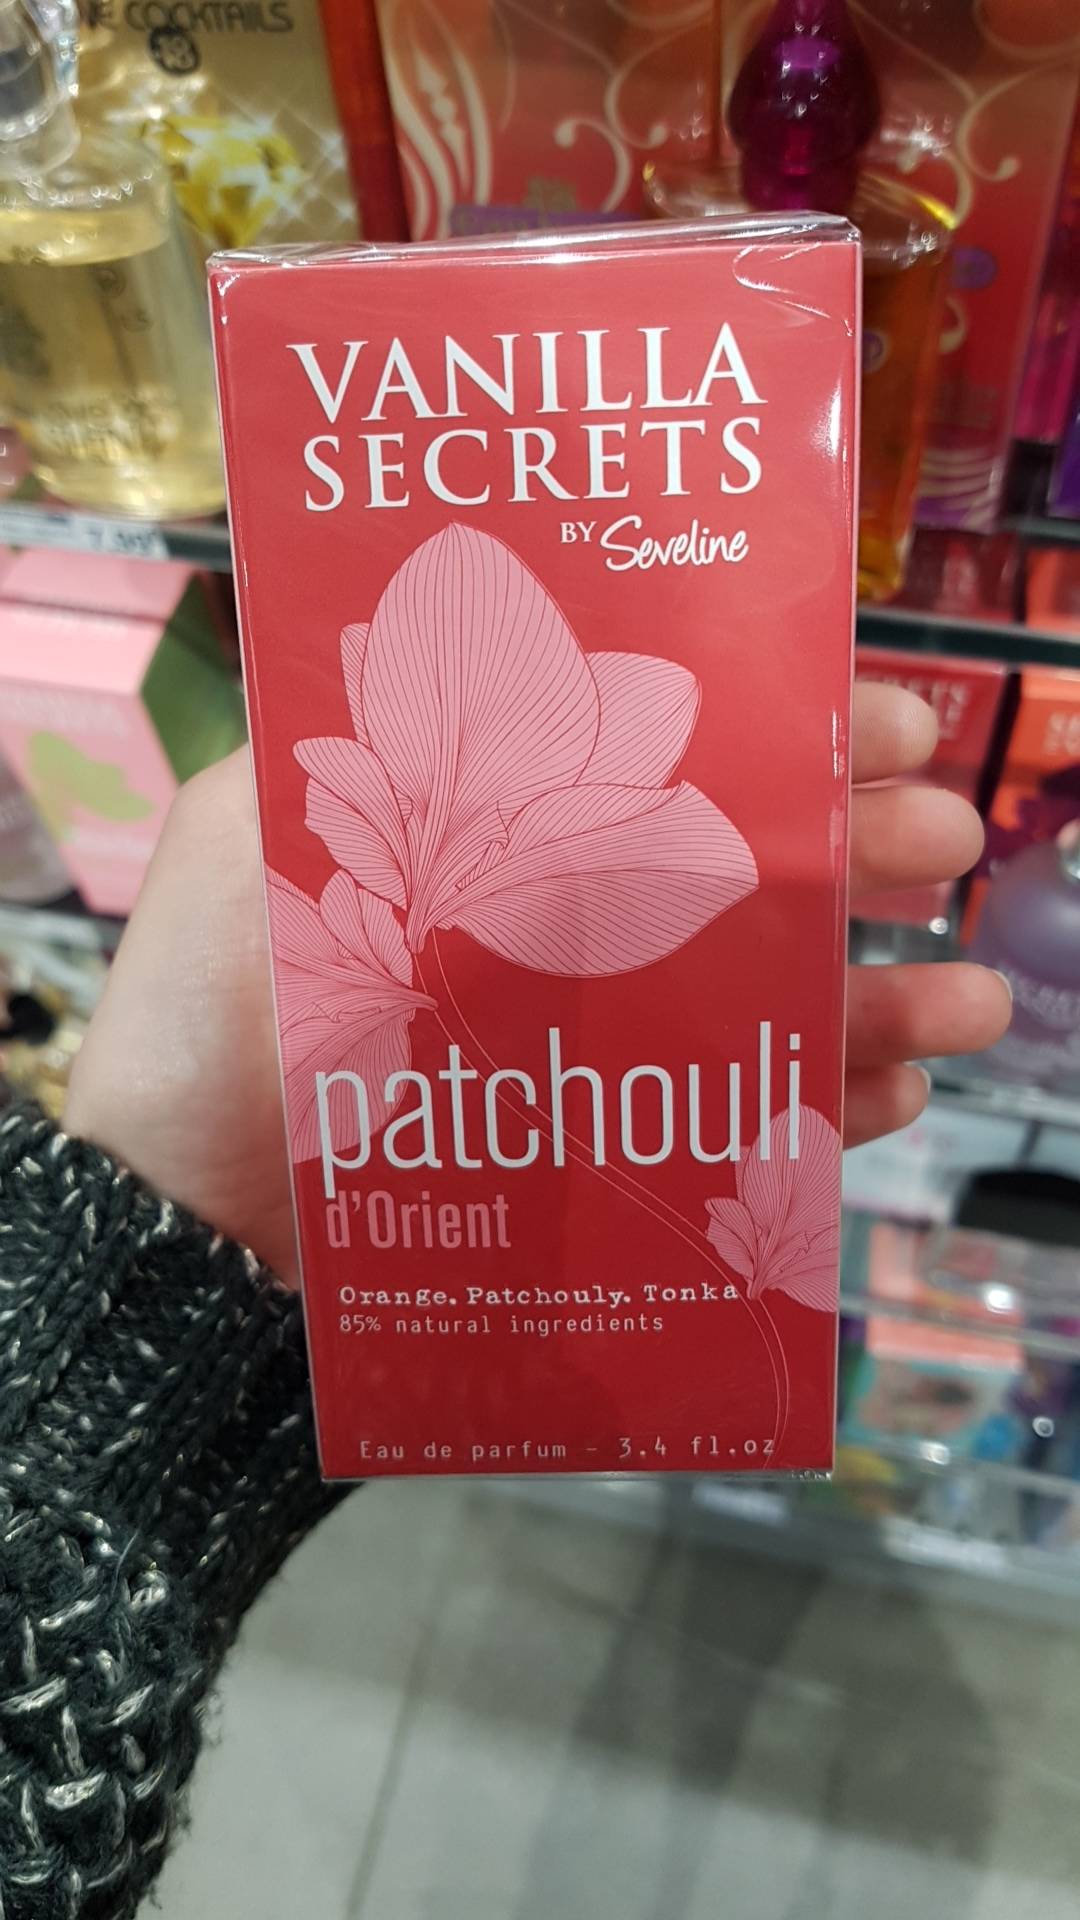 VANILLA SECRETS - Patchouli d'orient eau de parfum